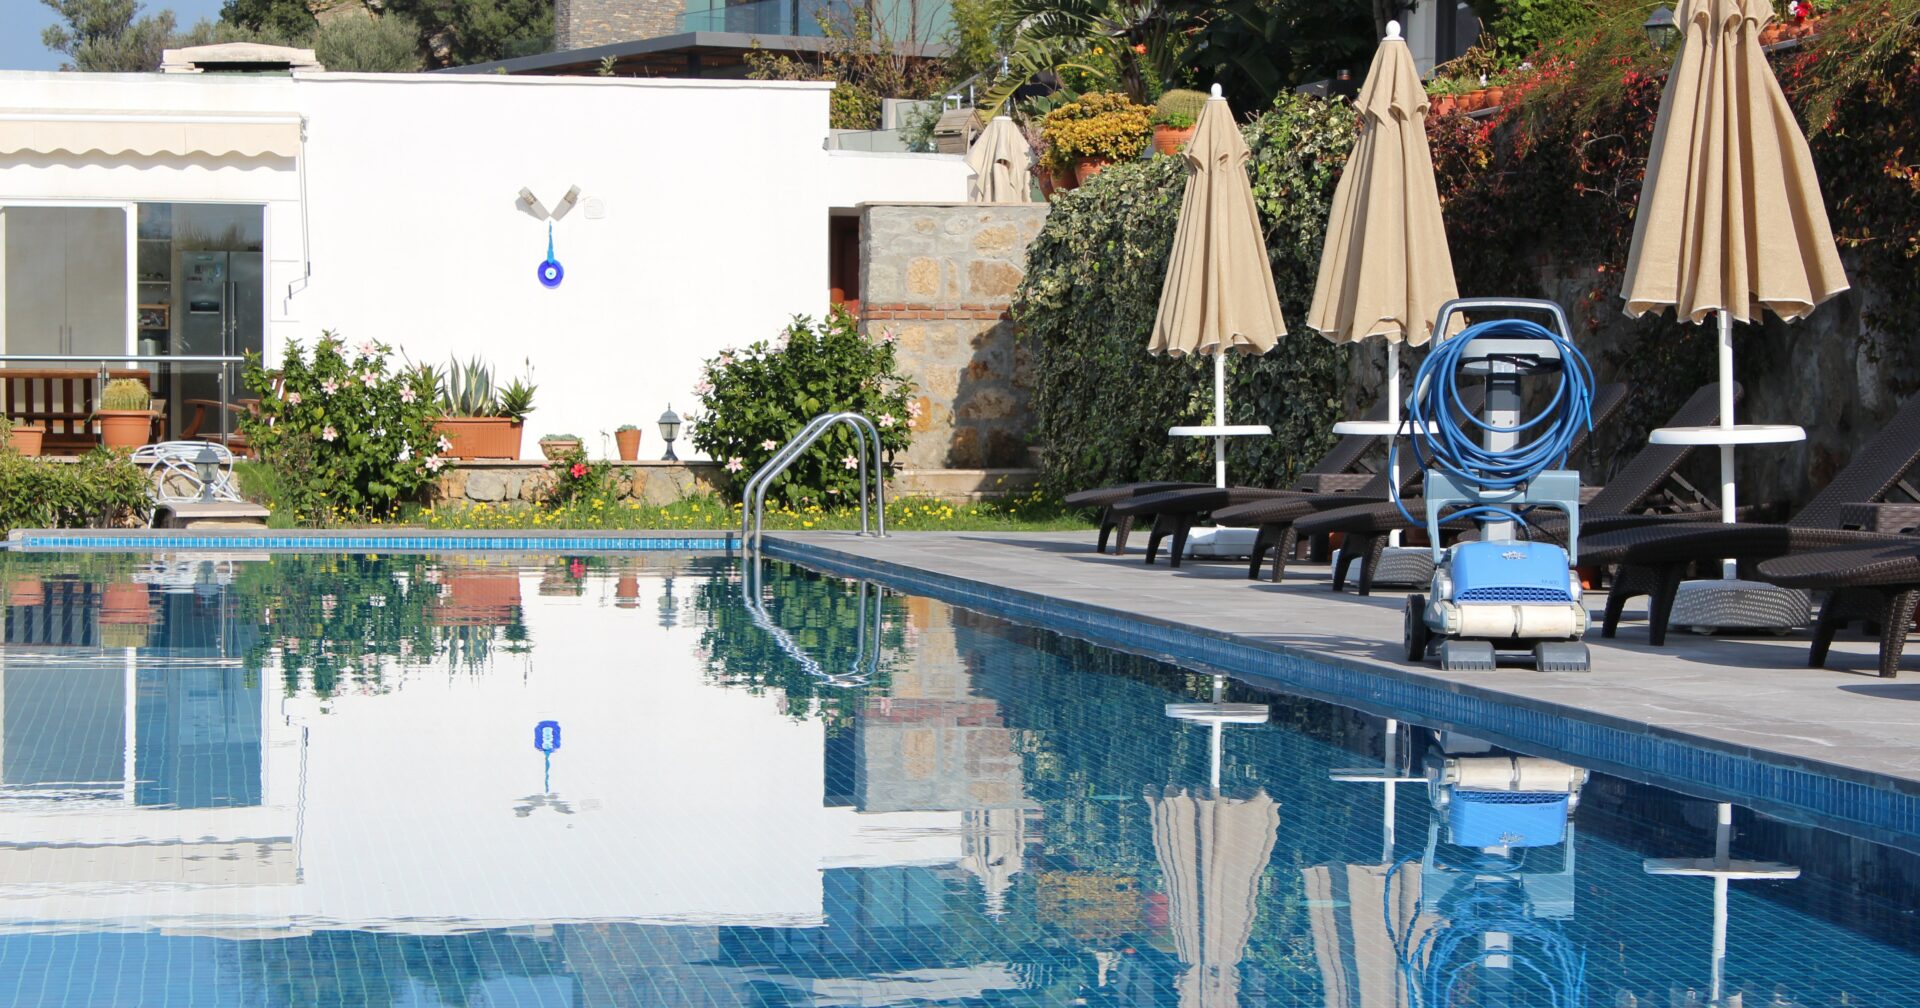 Pool & Gartenpflege werden auch in Ihrer Abwesenheit von Mallorca zuverlässig durch uns übernommen